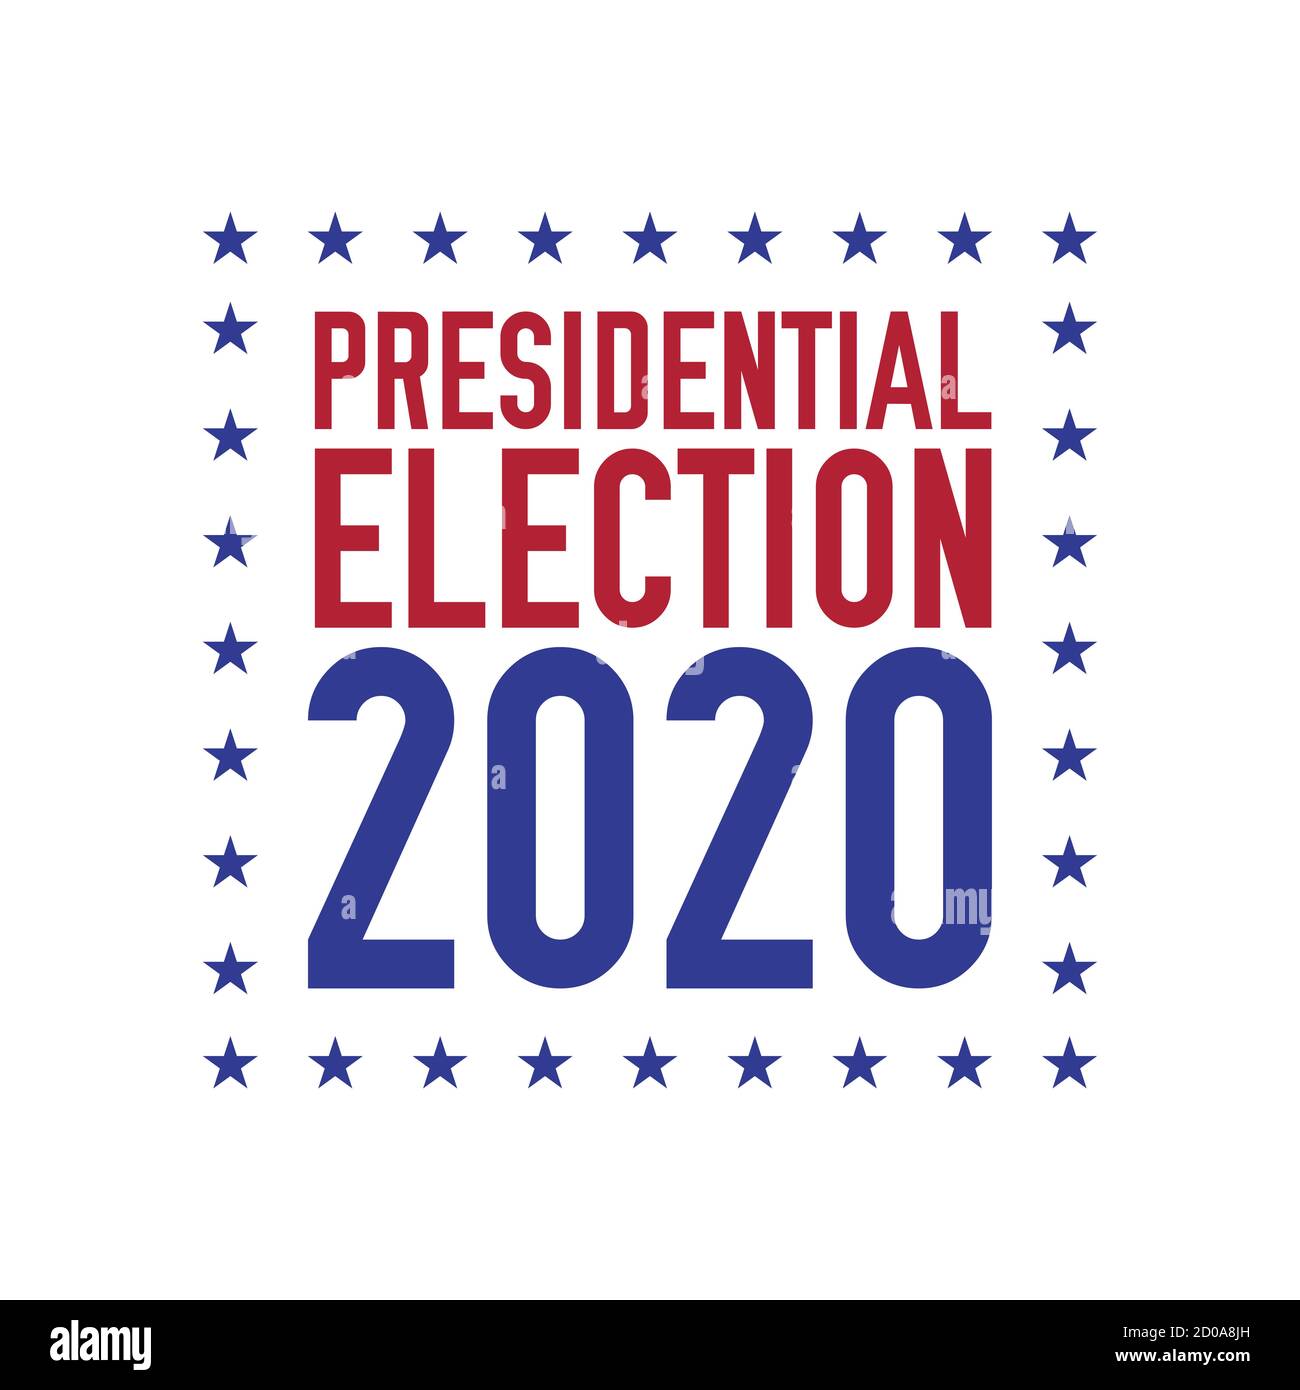 Presidential election 2020 emblem design. 2020 United States presidential election. illustration. Stock Photo